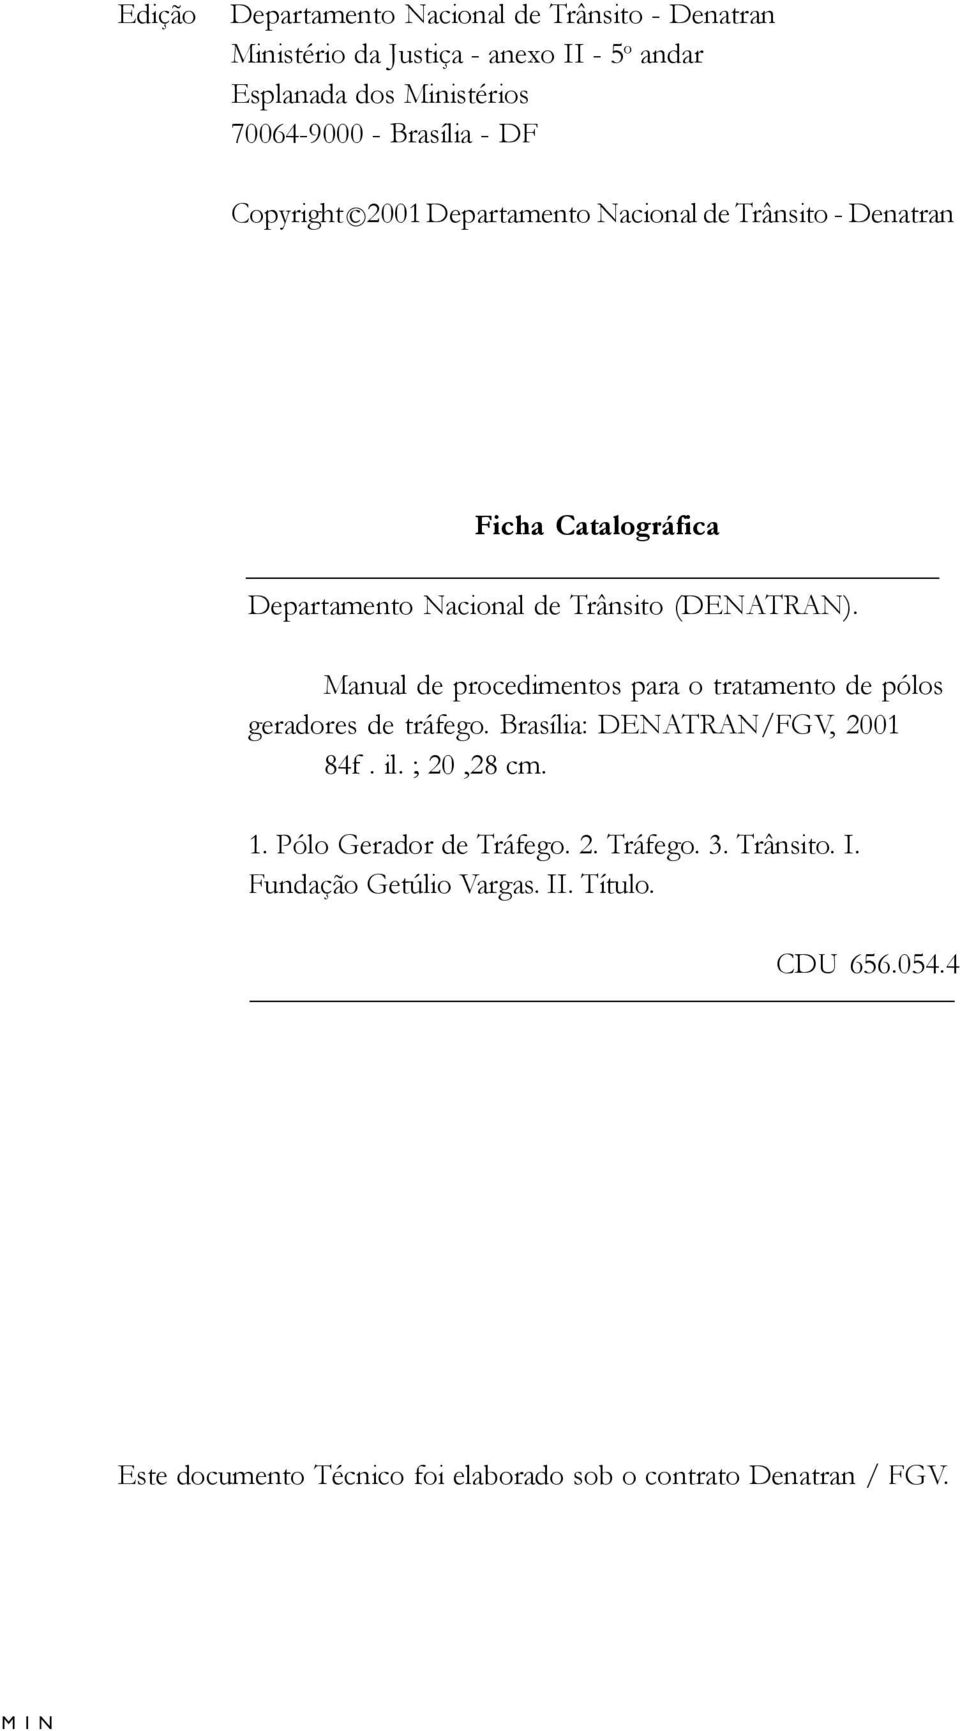 Manual de procedimentos para o tratamento de pólos geradores de tráfego. Brasília: DENATRAN/FGV, 2001 84f. il. ; 20,28 cm. 1. Pólo Gerador de Tráfego. 2. Tráfego. 3.